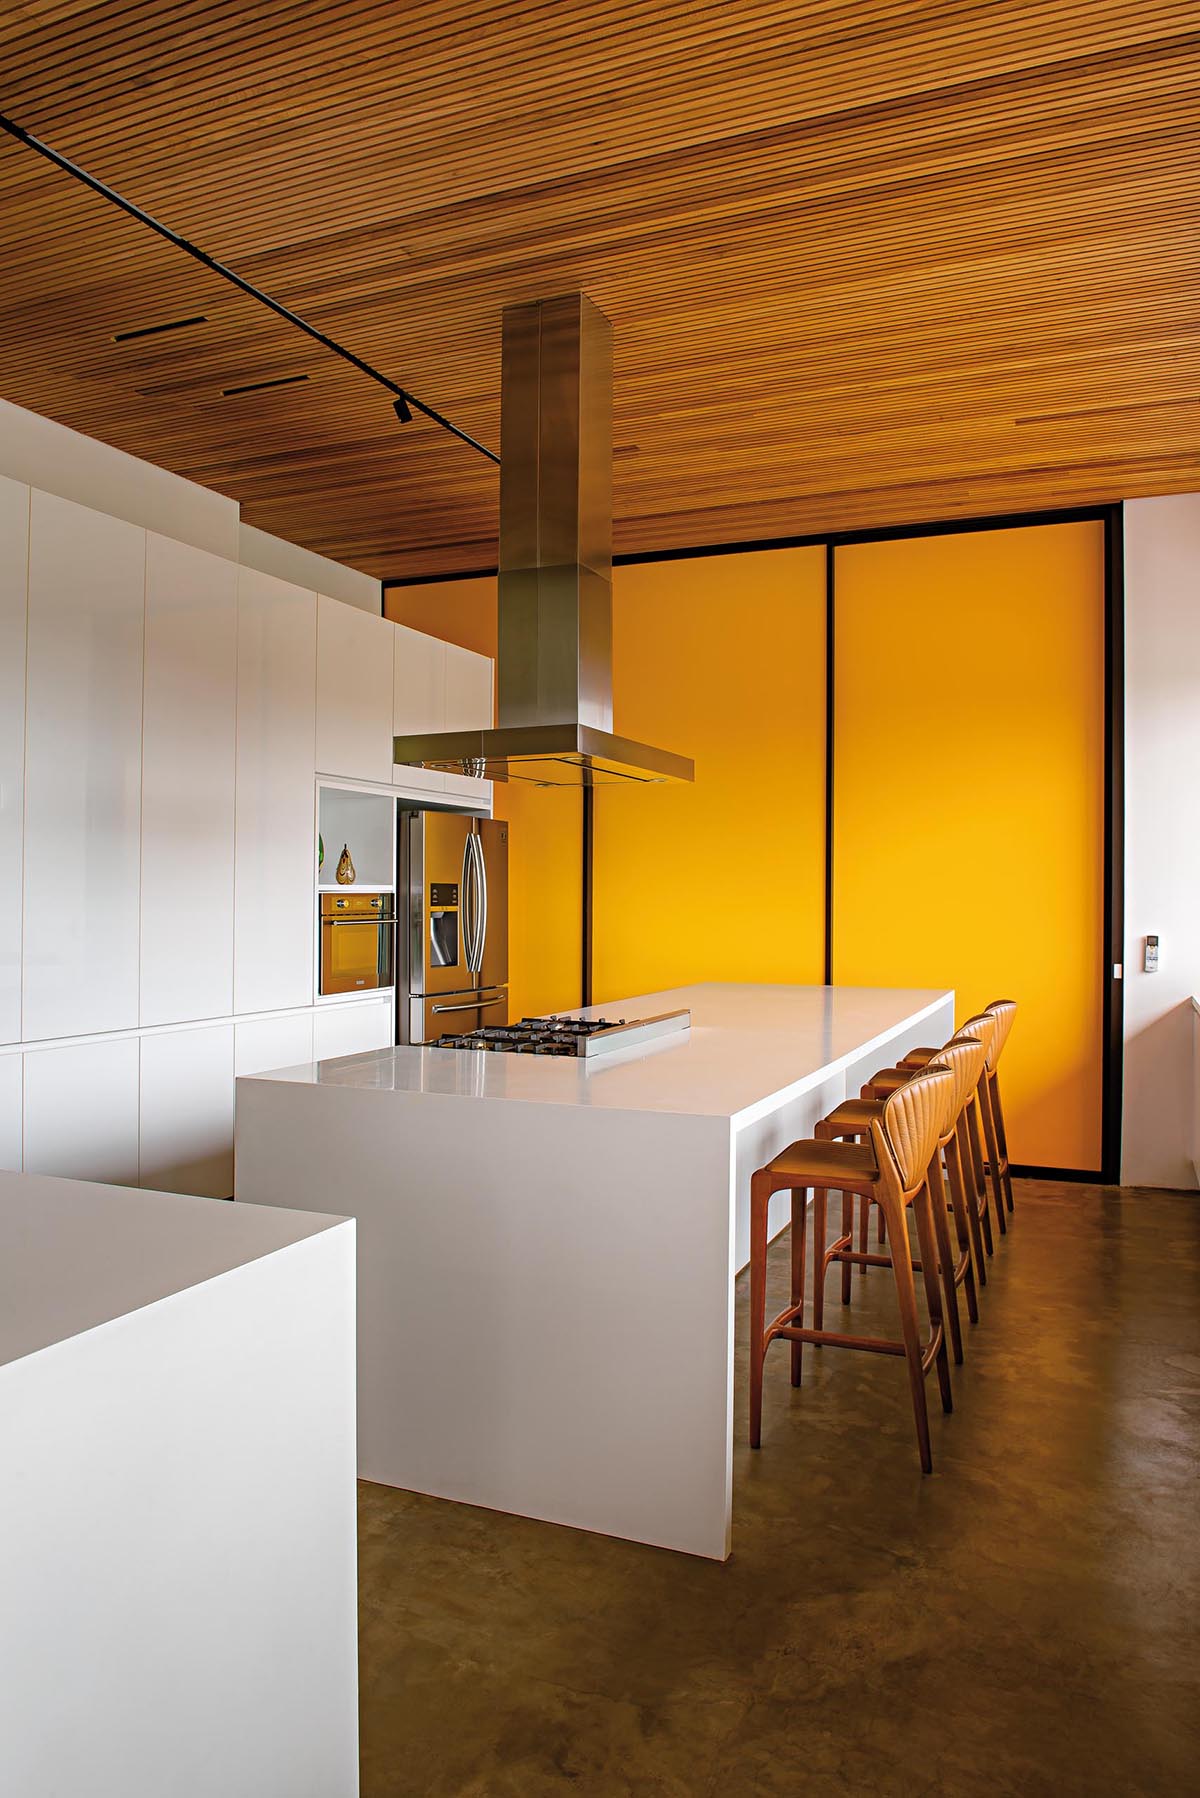 На этой современной кухне есть минималистские белые шкафы и островки без оборудования. Ярко-желтая стена с акцентом создает смелое и красочное впечатление.